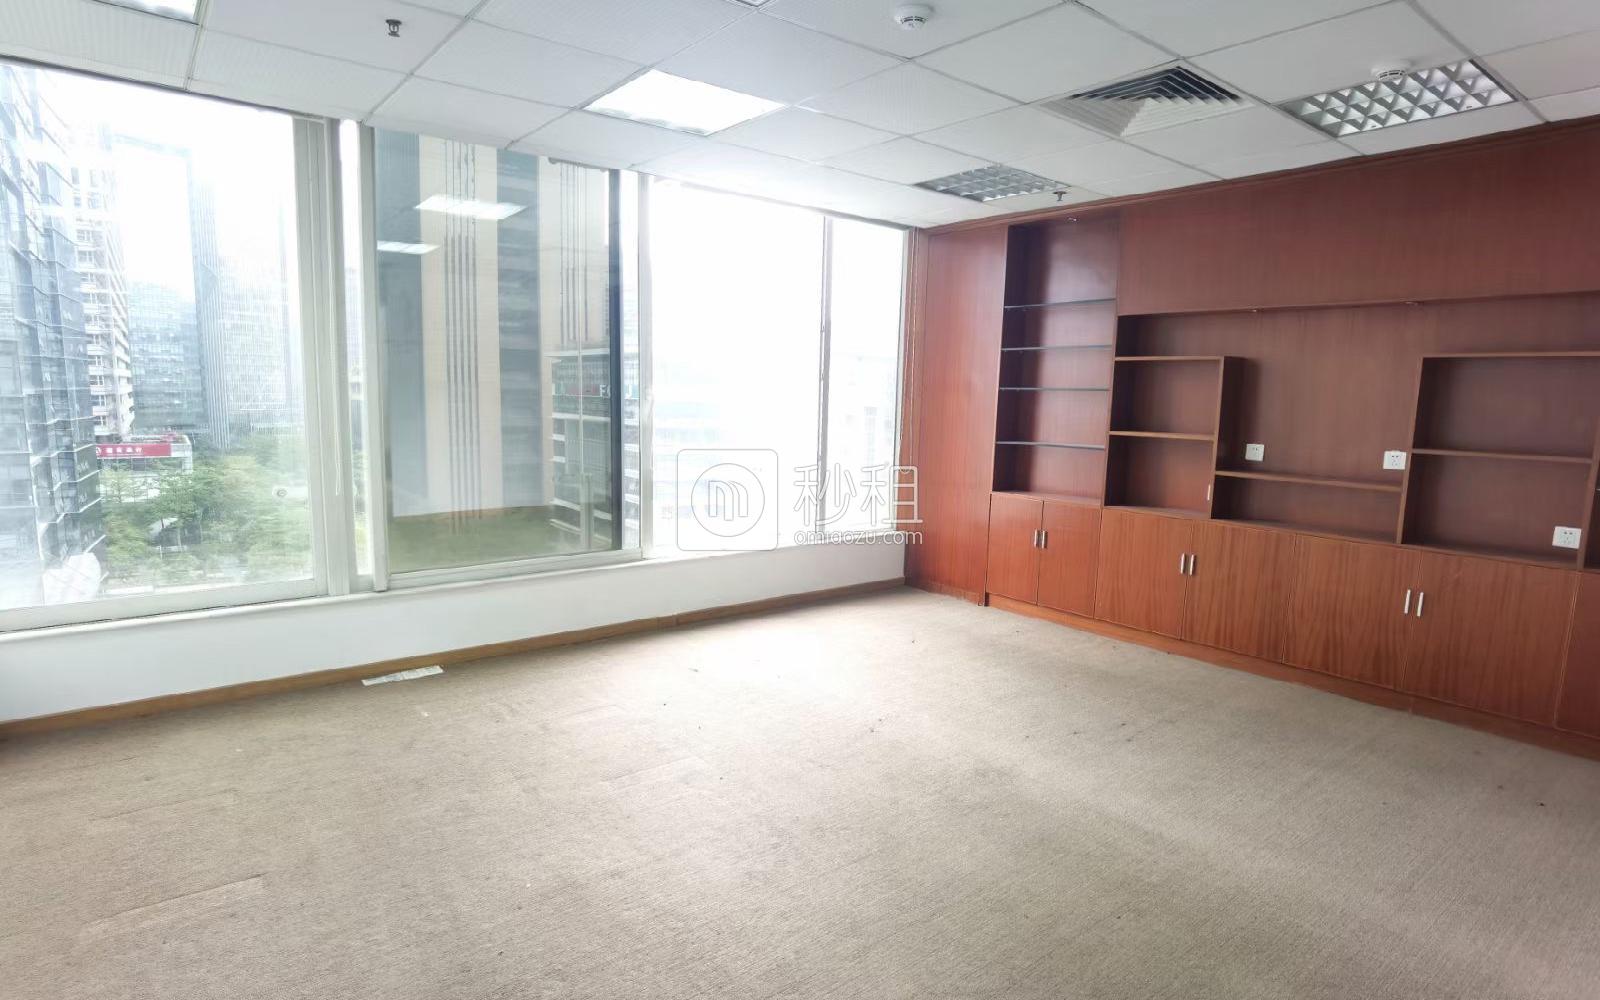 TCL大厦写字楼出租825平米简装办公室135元/m².月